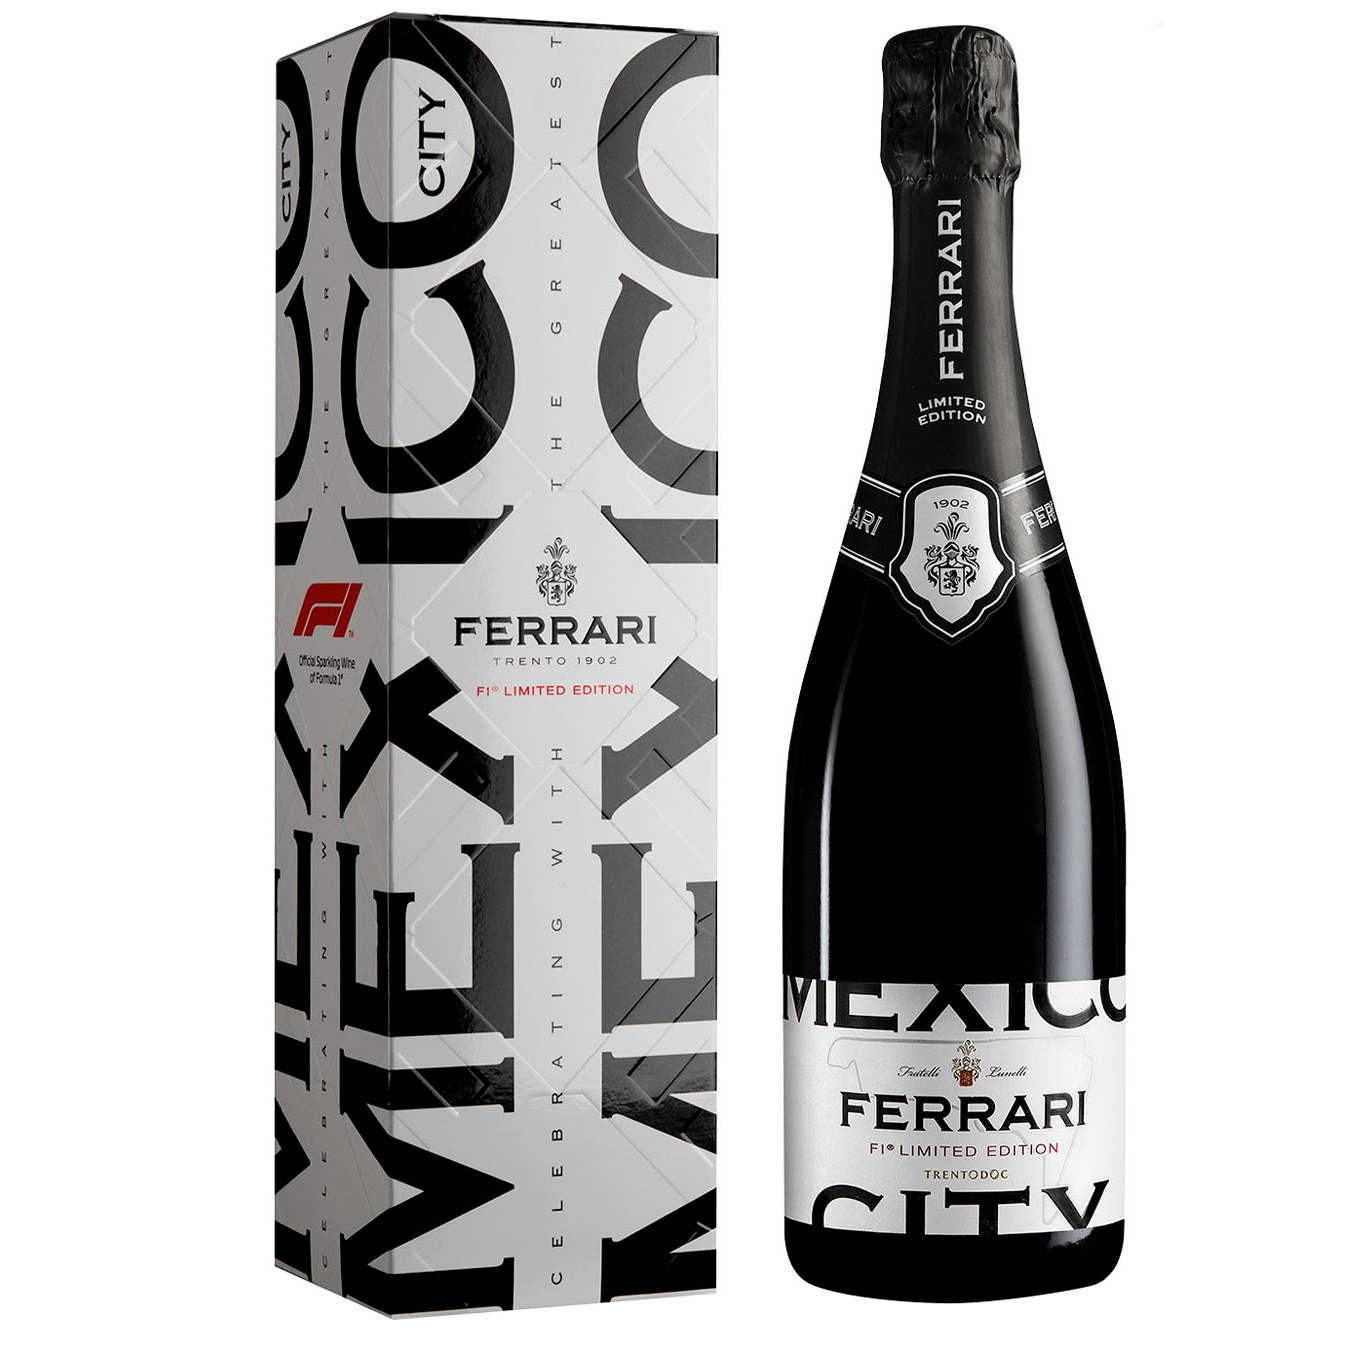 Ferrari Ferrari F1 Mexico City Limited Edition Trentodoc Sparkling Wine NV